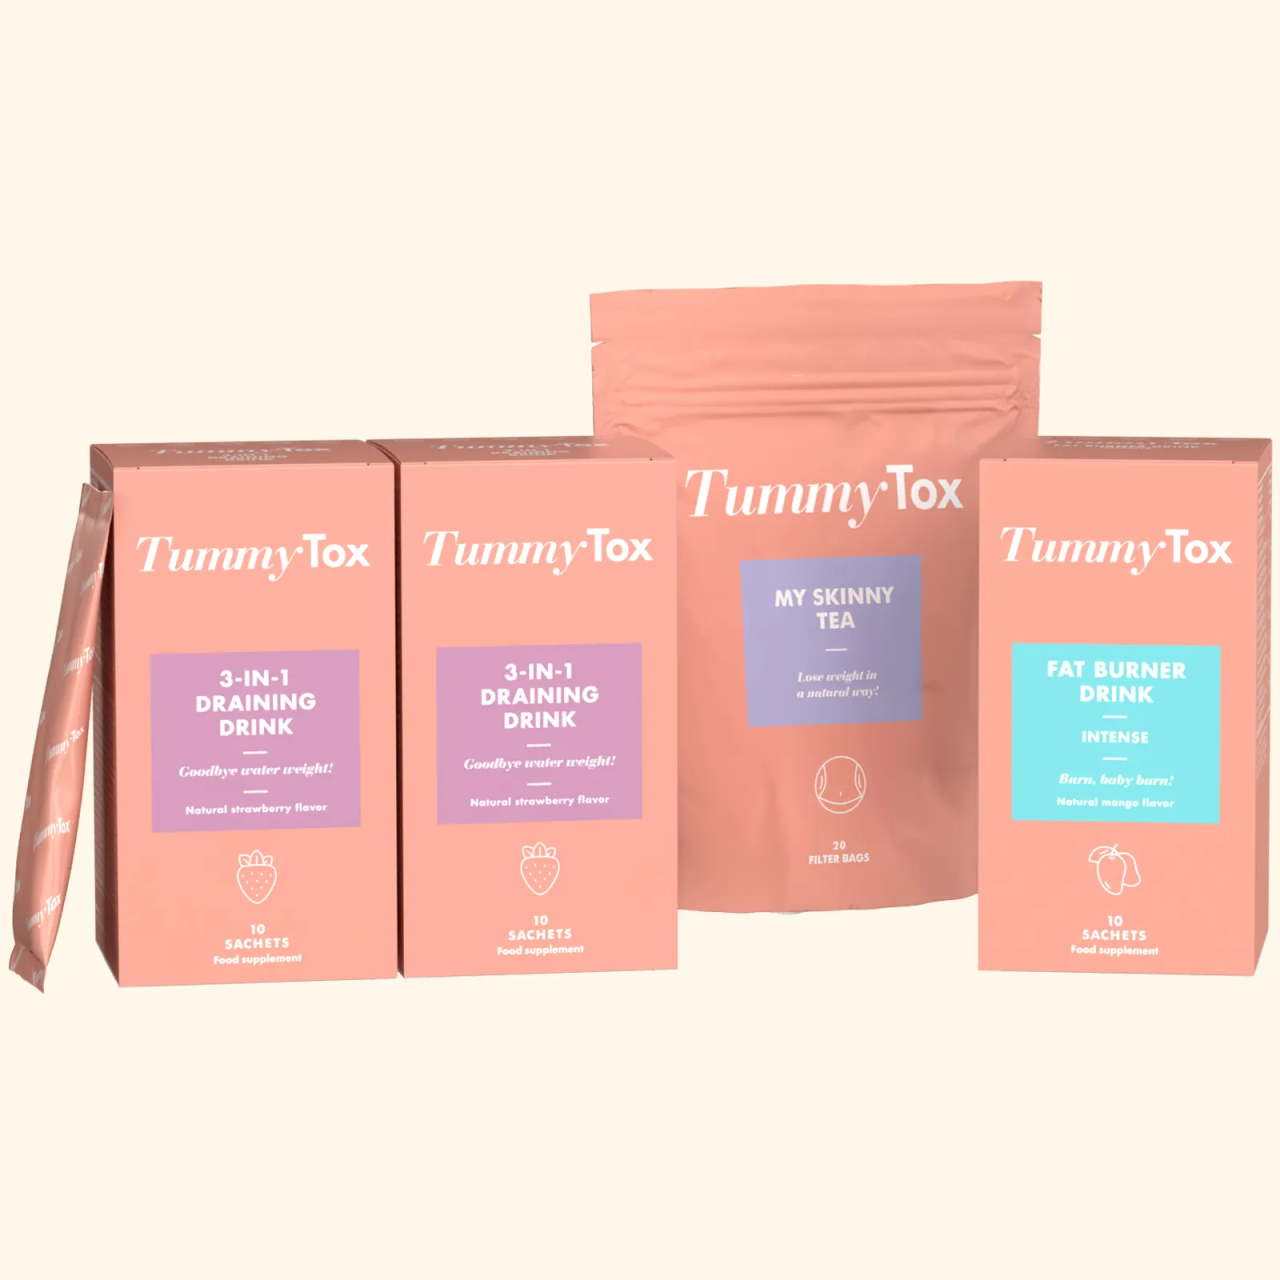 Programa Corpinho Elegante para 20 dias | 3 produtos top de emagrecimento para resultados super rápidos | TummyTox.